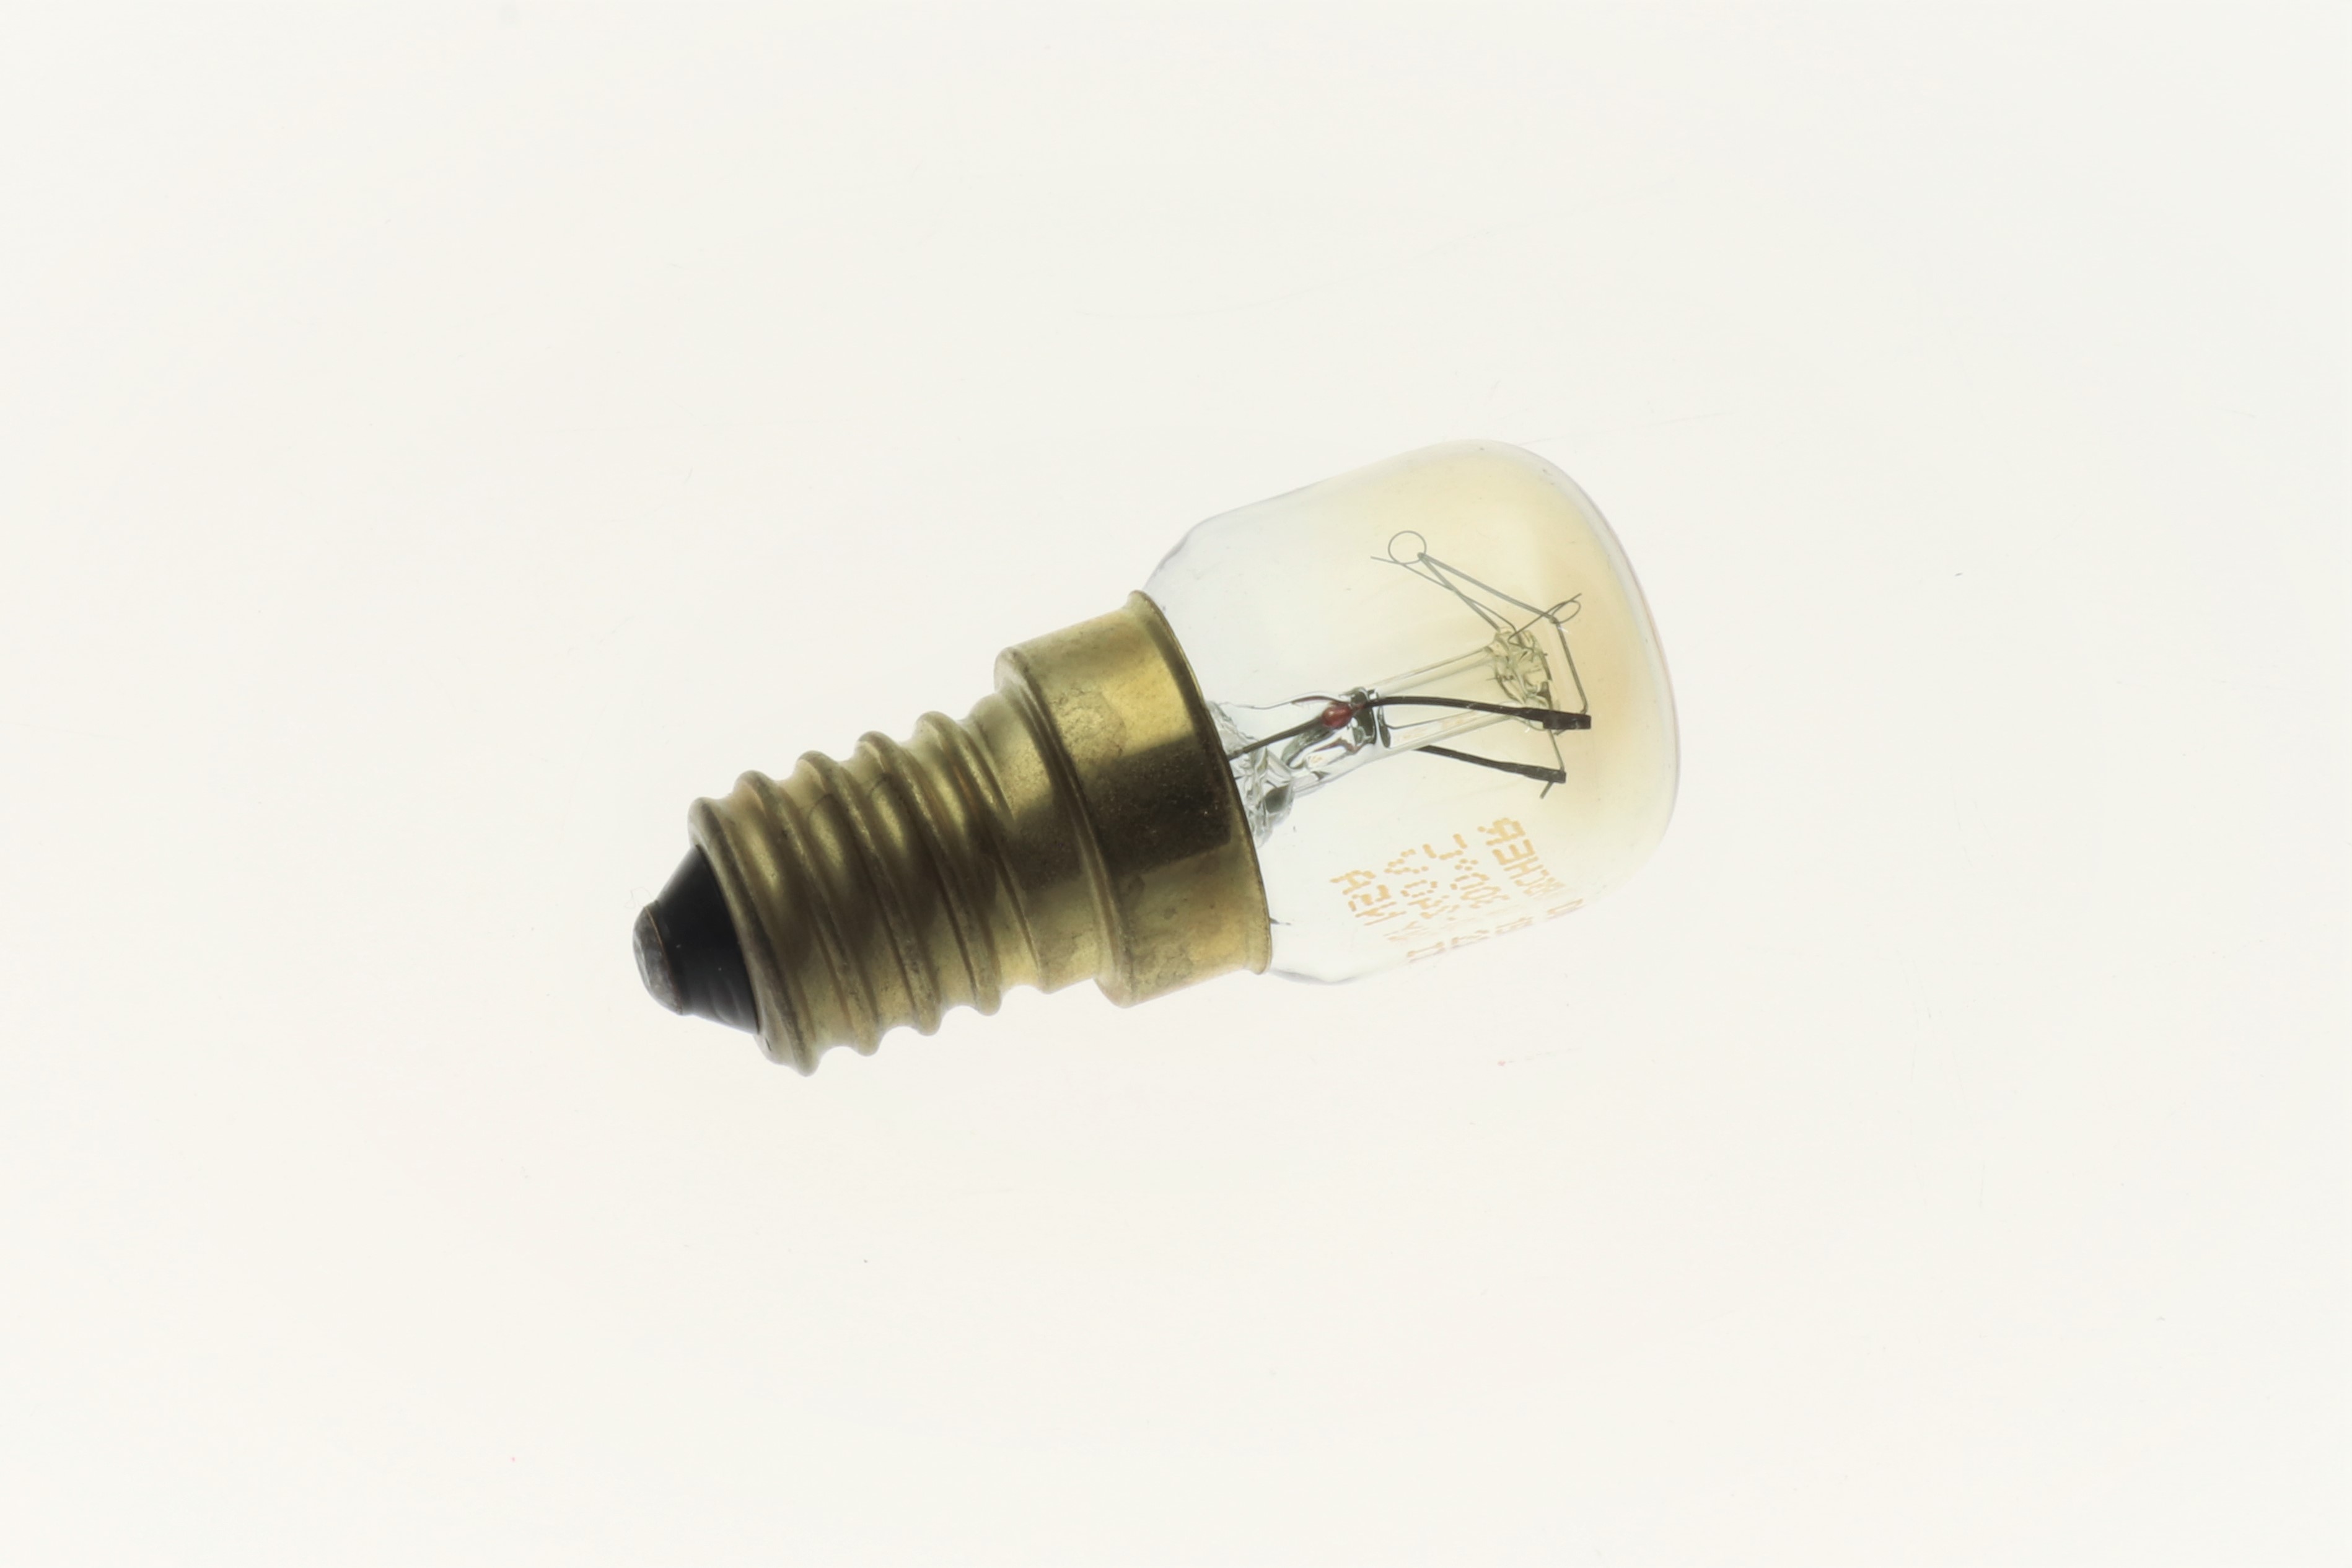 BJB E14 incandescent lamp15W/230-240V max. 300° C